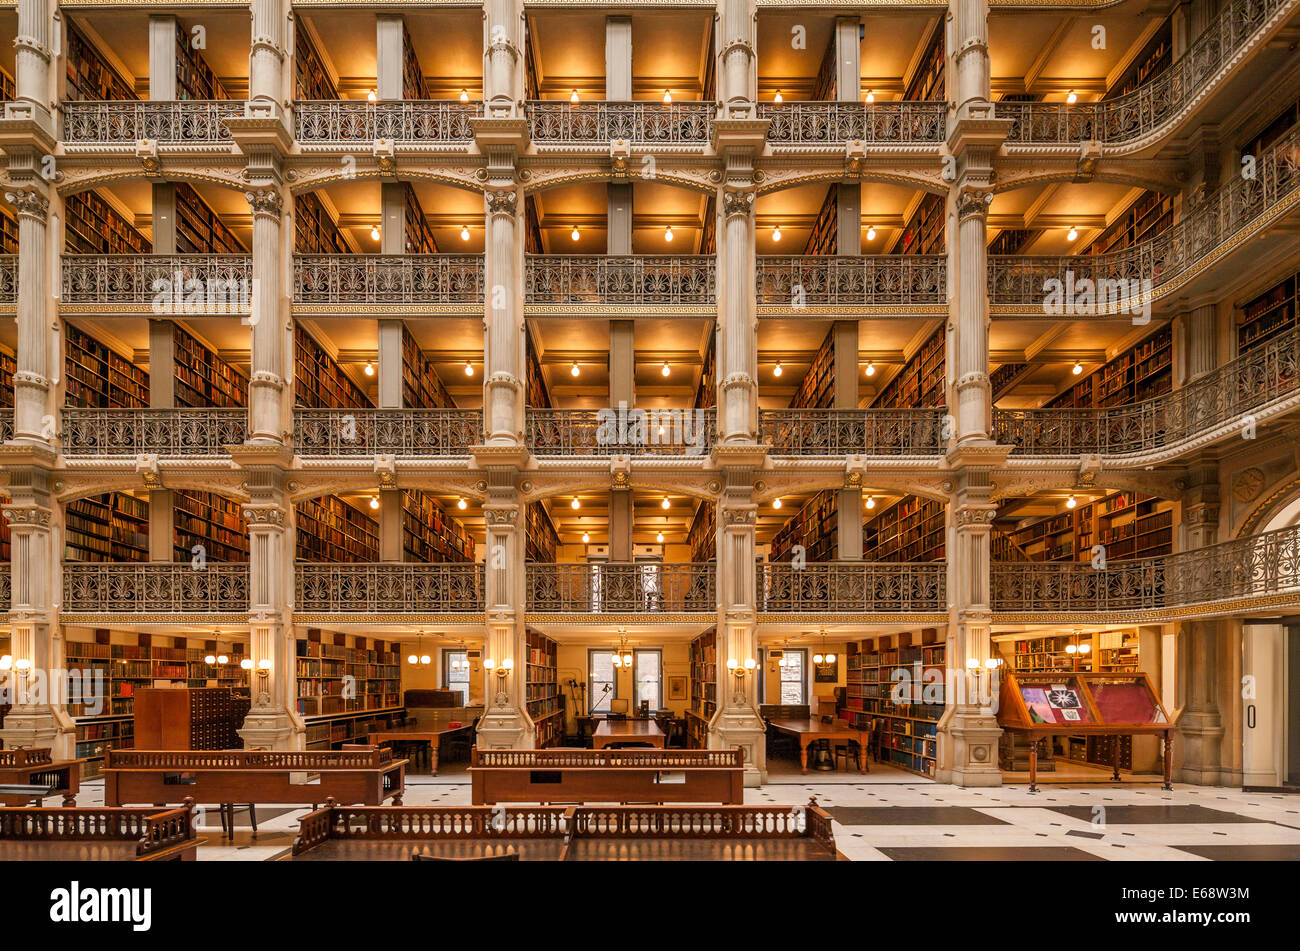 Baltimore George Peabody Bibliothek eines berühmten schönsten Bibliotheken der Welt. Stockfoto